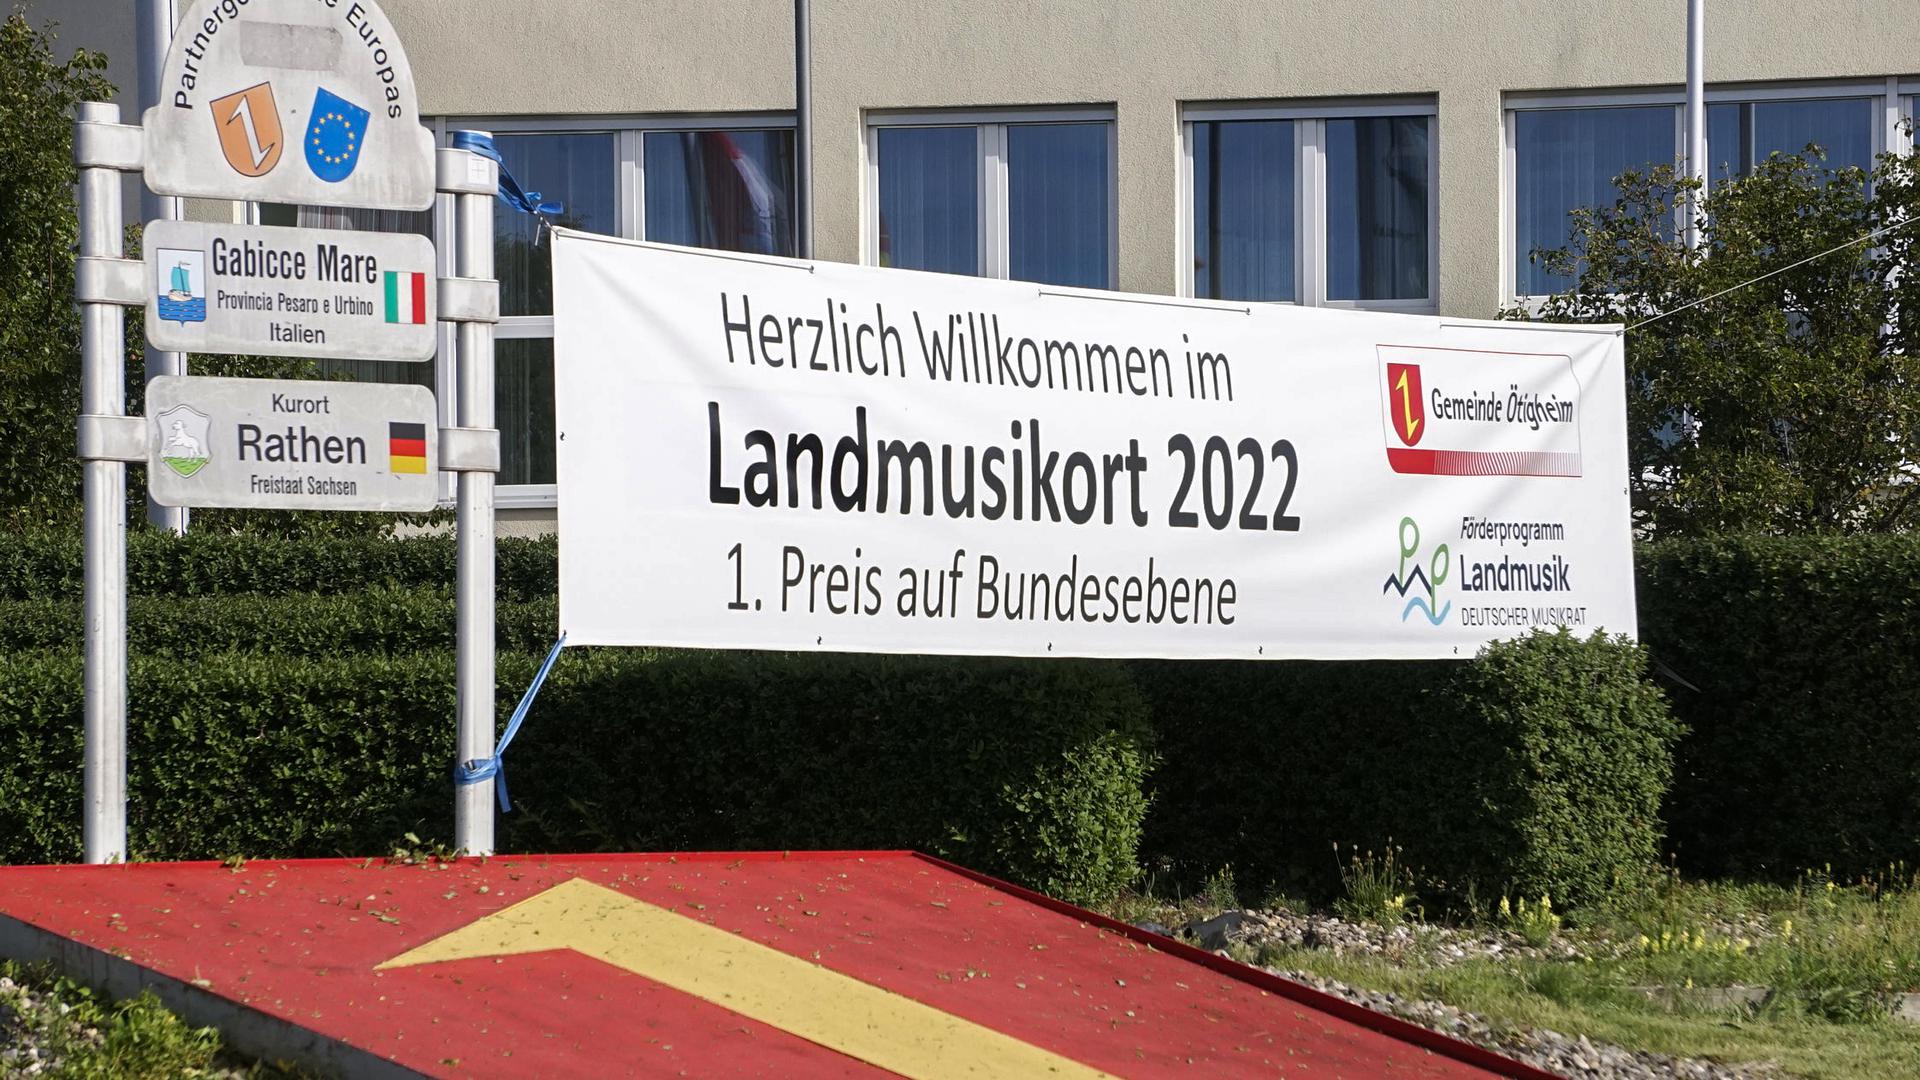 Aktuelles Prädikat: Ötigheim ist Landmusikort, wie das Banner zeigt. Jetzt geht es darum zu entscheiden, was auf den Ortstafeln zusätzlich  stehen könnte.    